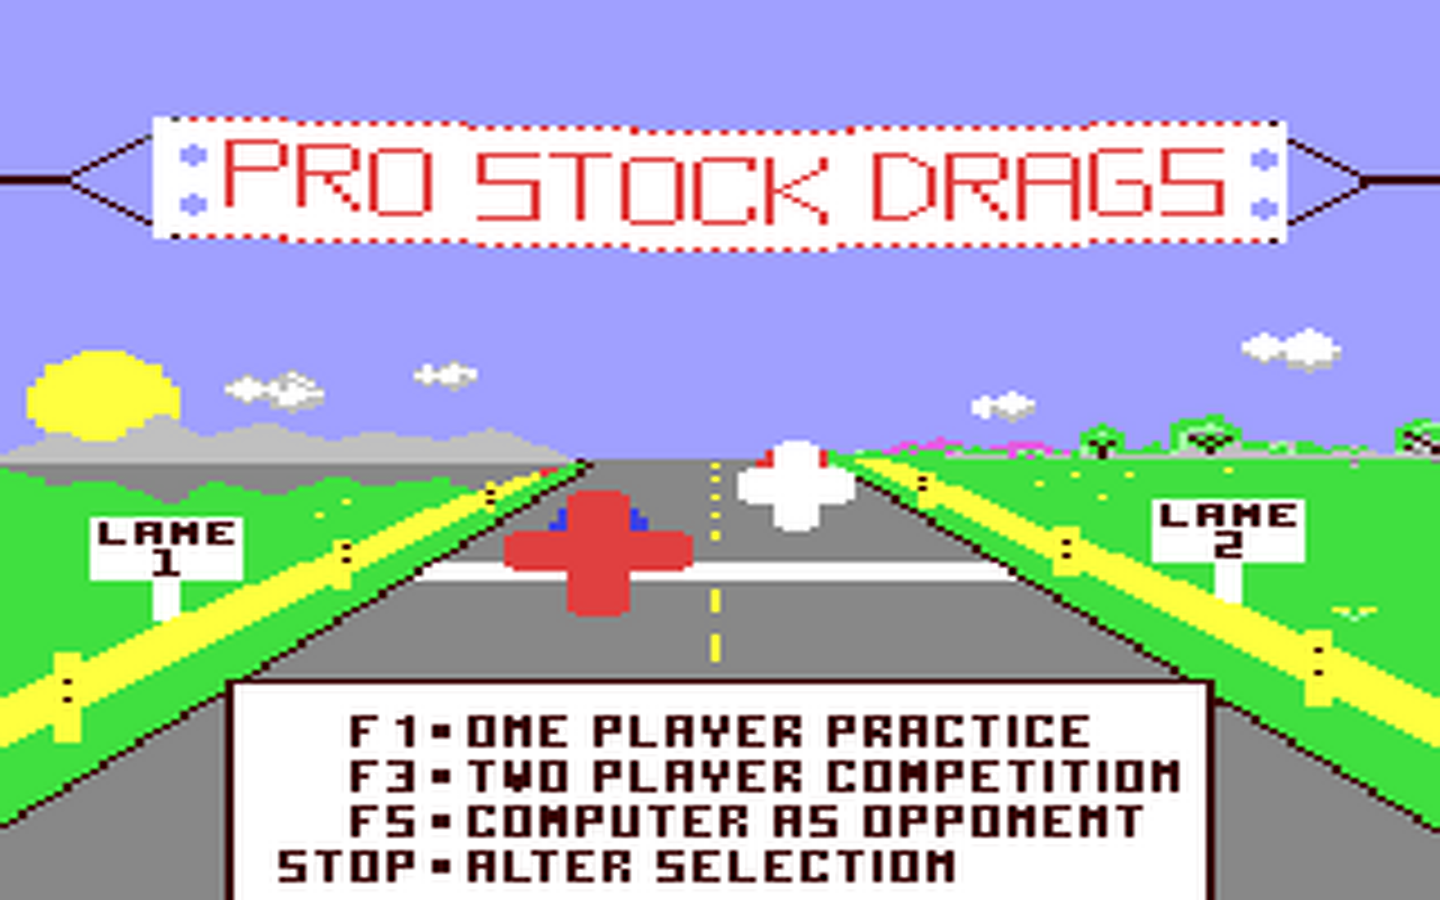 C64 GameBase Pro_Stock_Drags